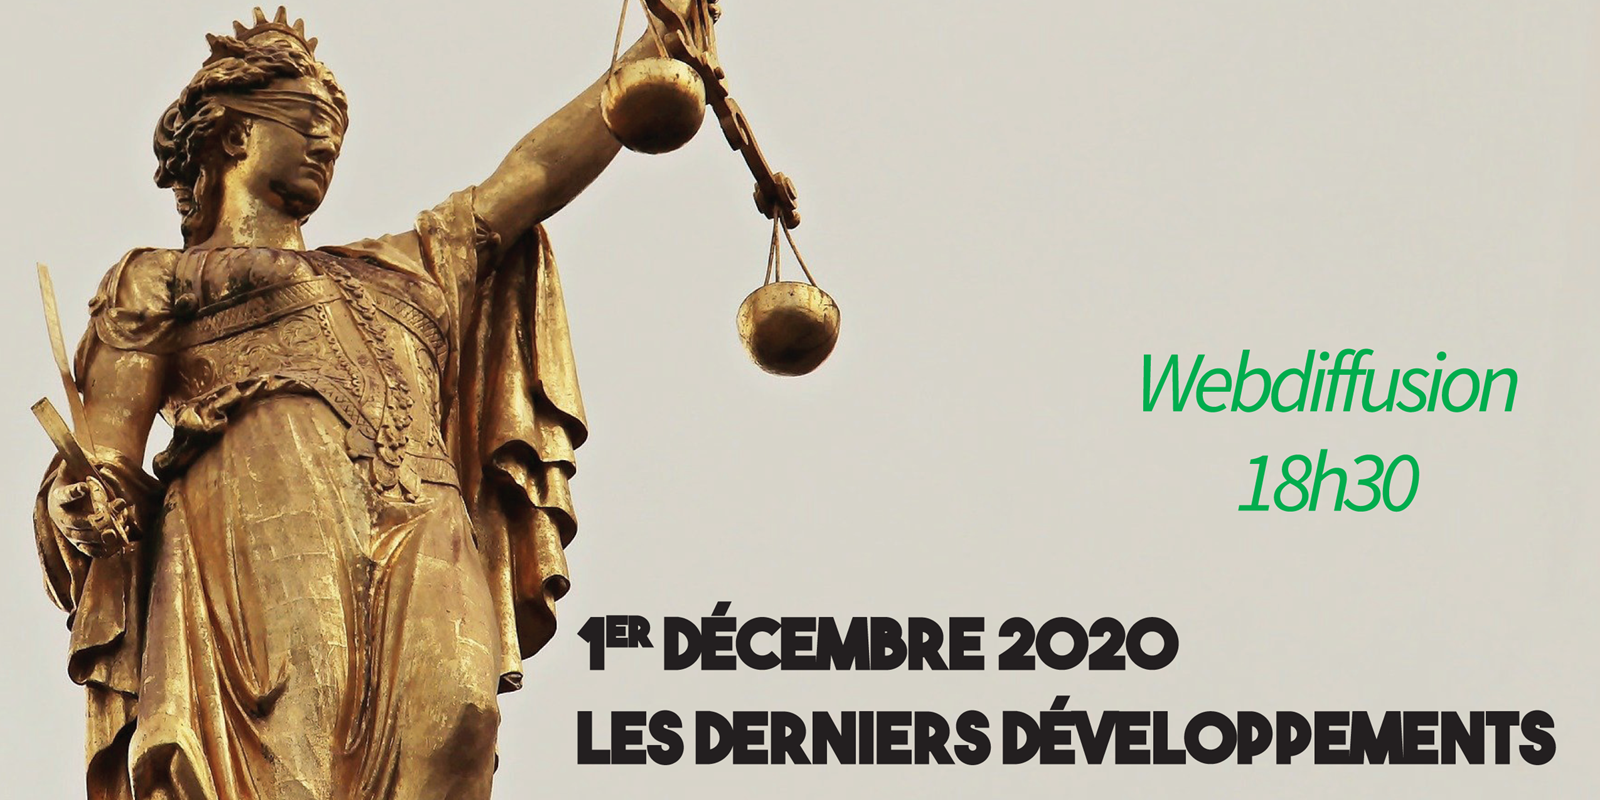 1e décembre 2020 - Les derniers développements en droit locatif